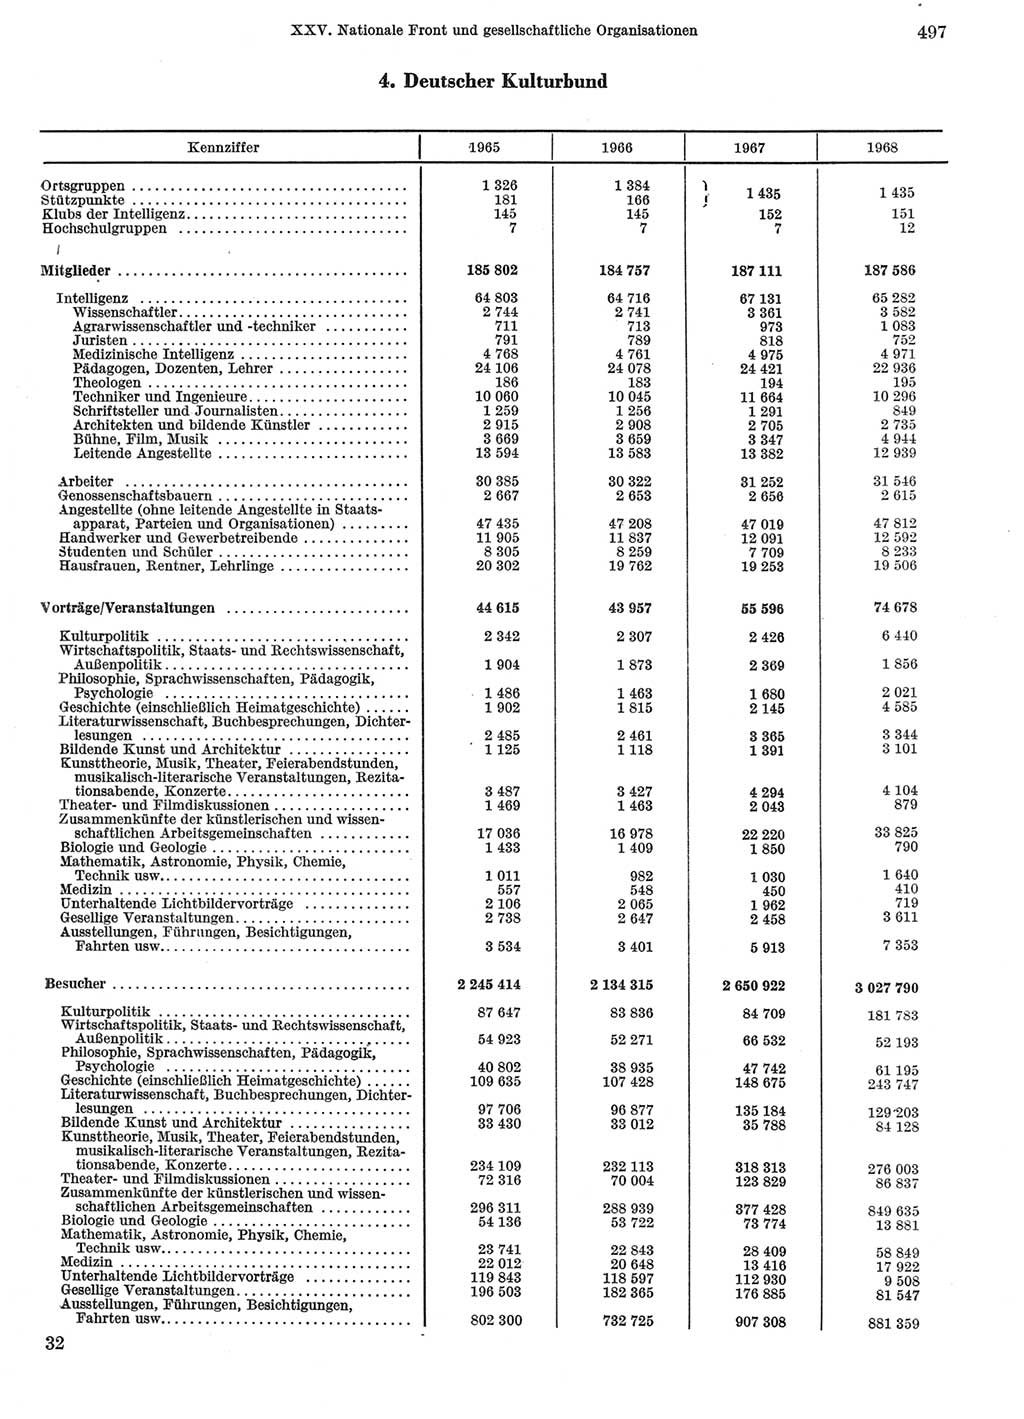 Statistisches Jahrbuch der Deutschen Demokratischen Republik (DDR) 1969, Seite 497 (Stat. Jb. DDR 1969, S. 497)